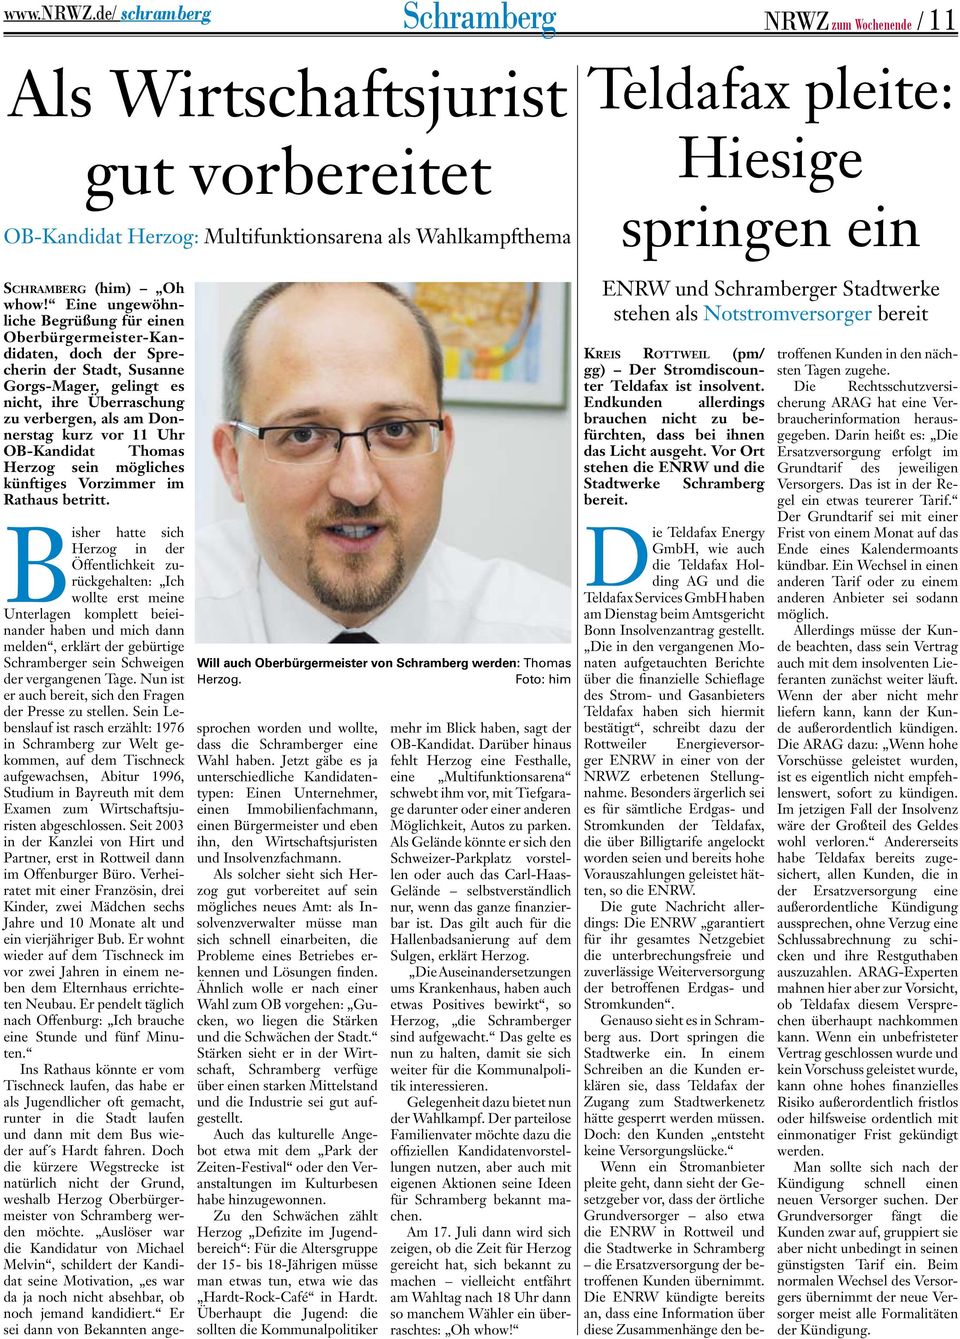 11 Uhr OB-Kandidat Thomas Herzog sein mögliches künftiges Vorzimmer im Rathaus betritt. Will auch Oberbürgermeister von Schramberg werden: Thomas Herzog.